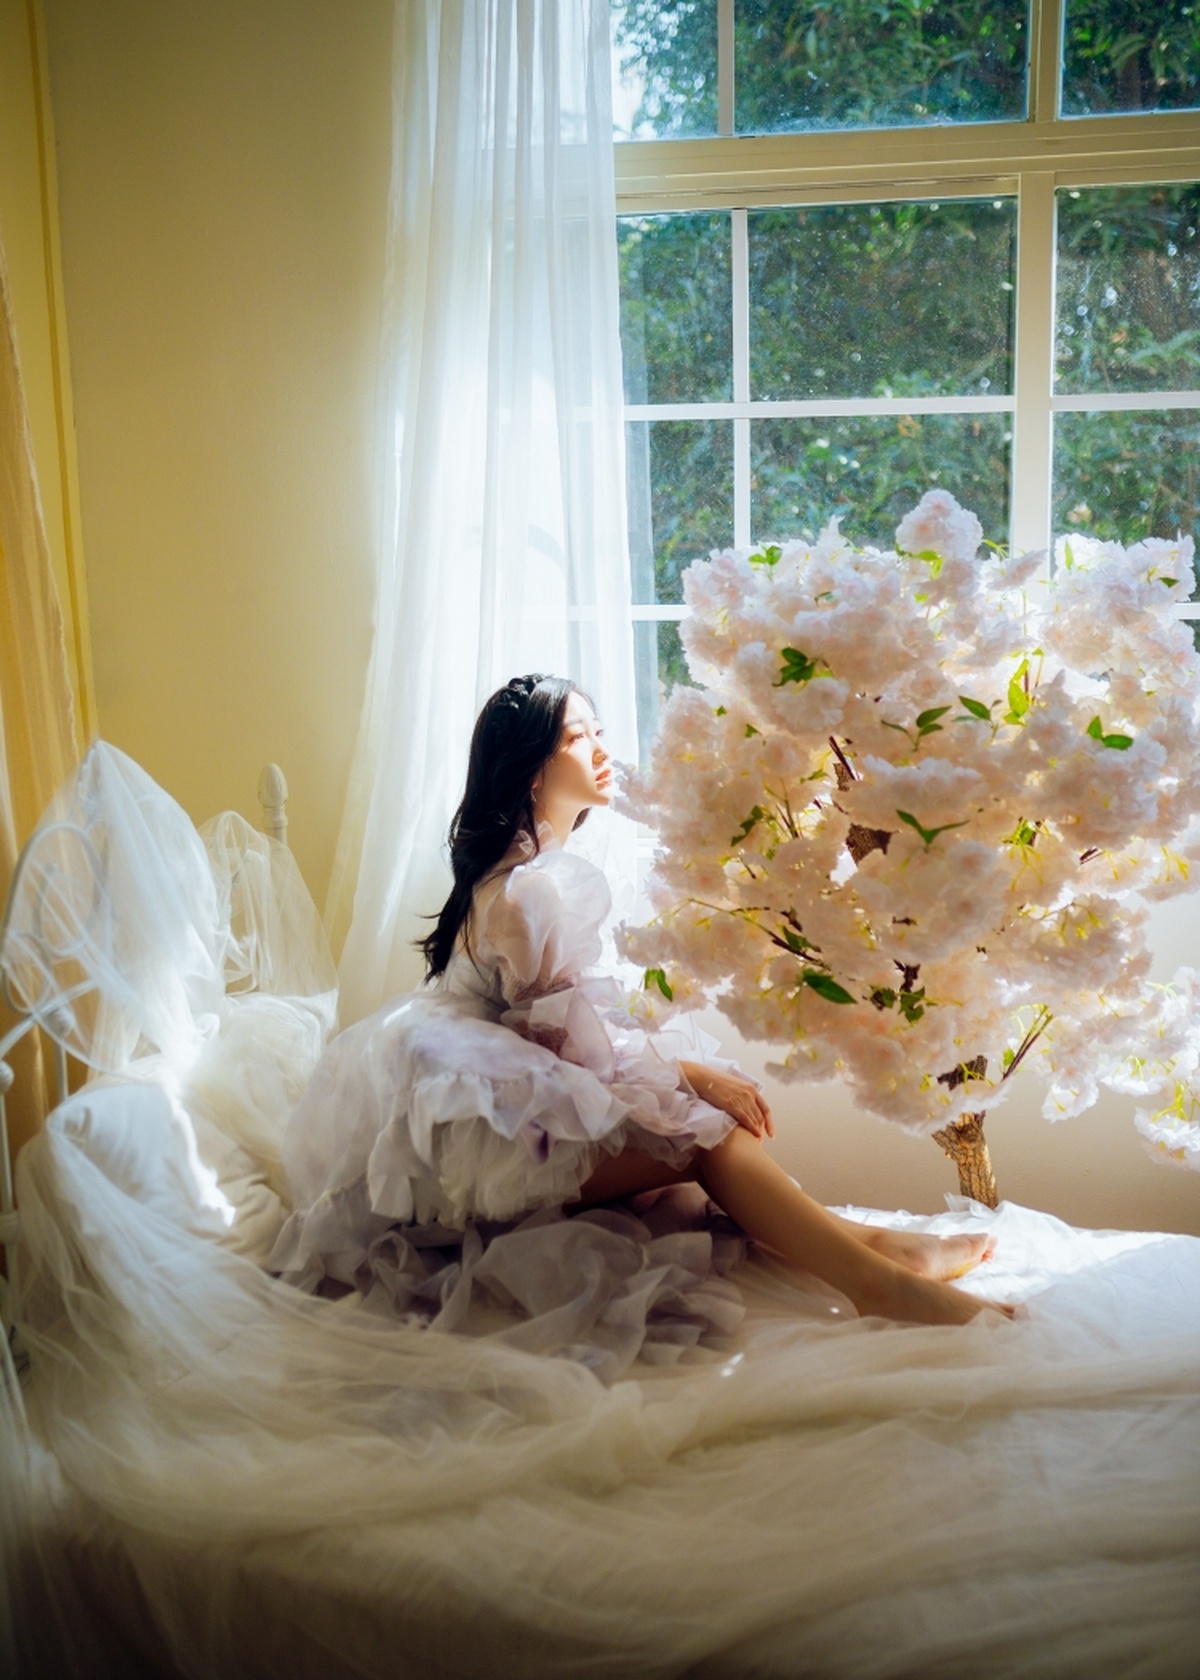 一个穿着白色连衣裙的年轻女子坐在窗前 窗外有一棵开满白色花朵的树。